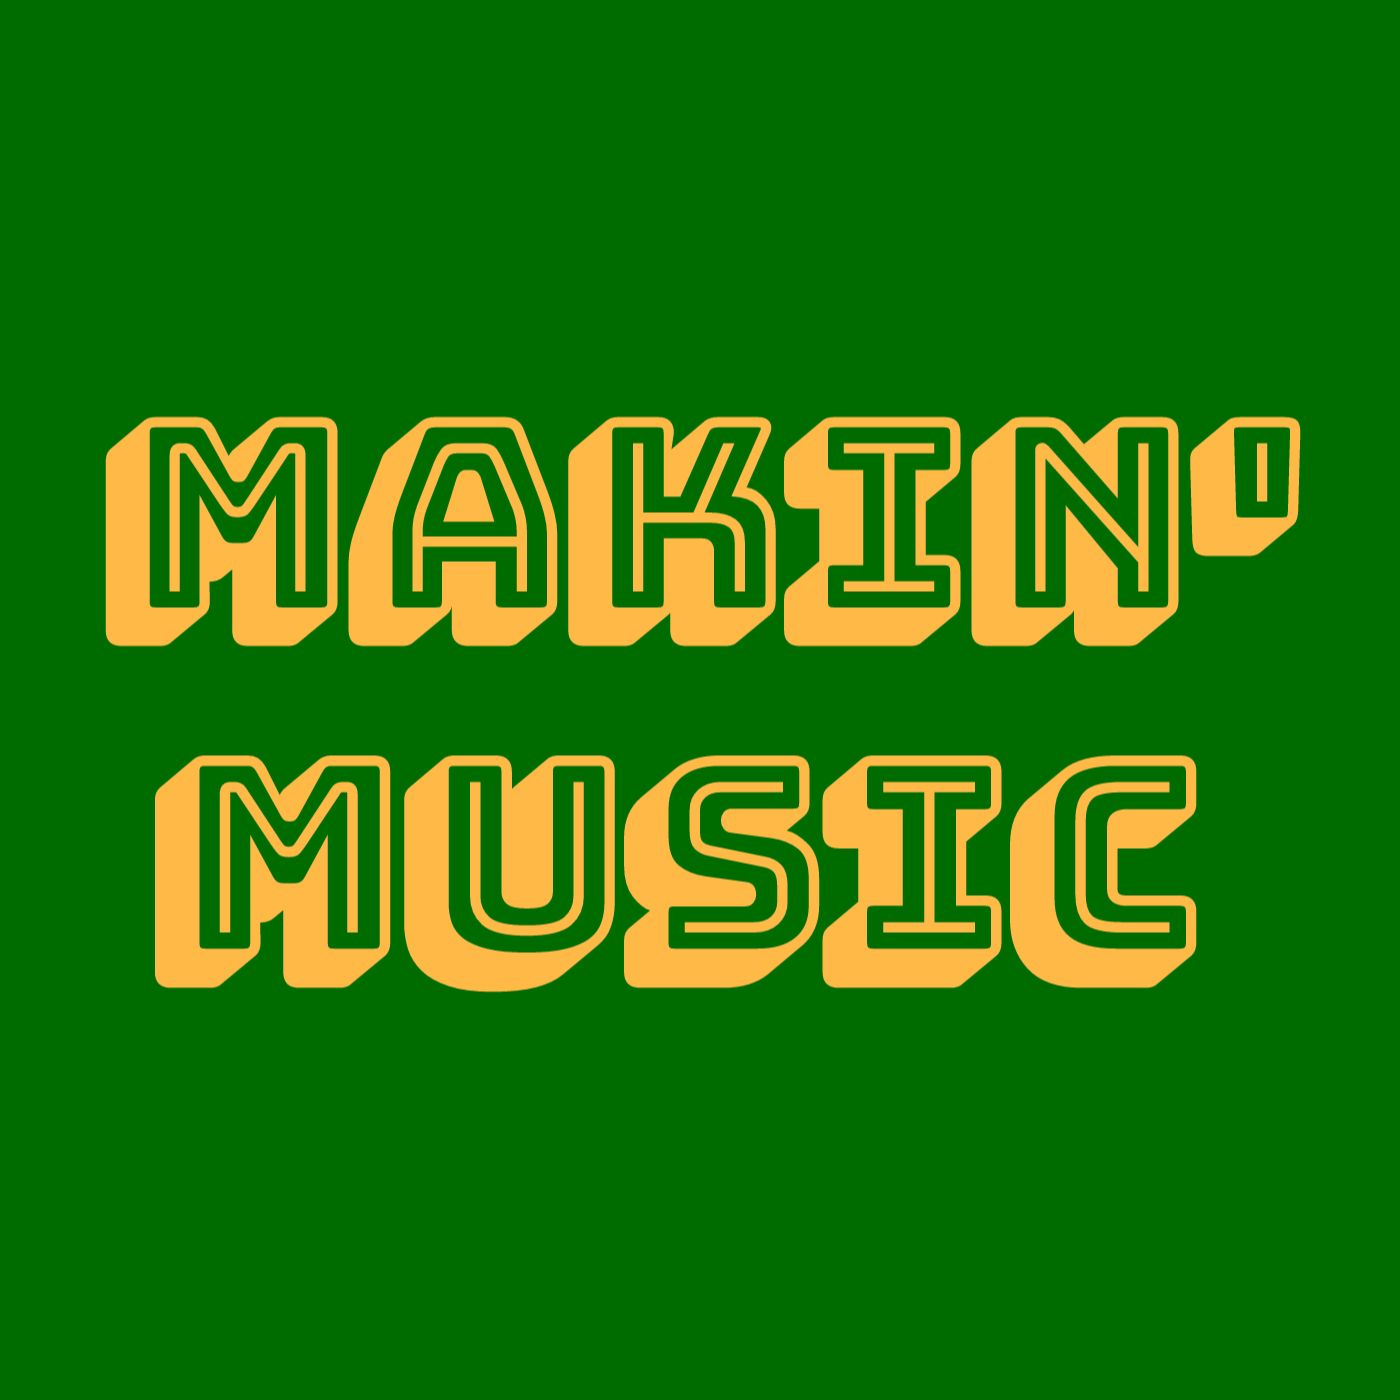 Makin' Music